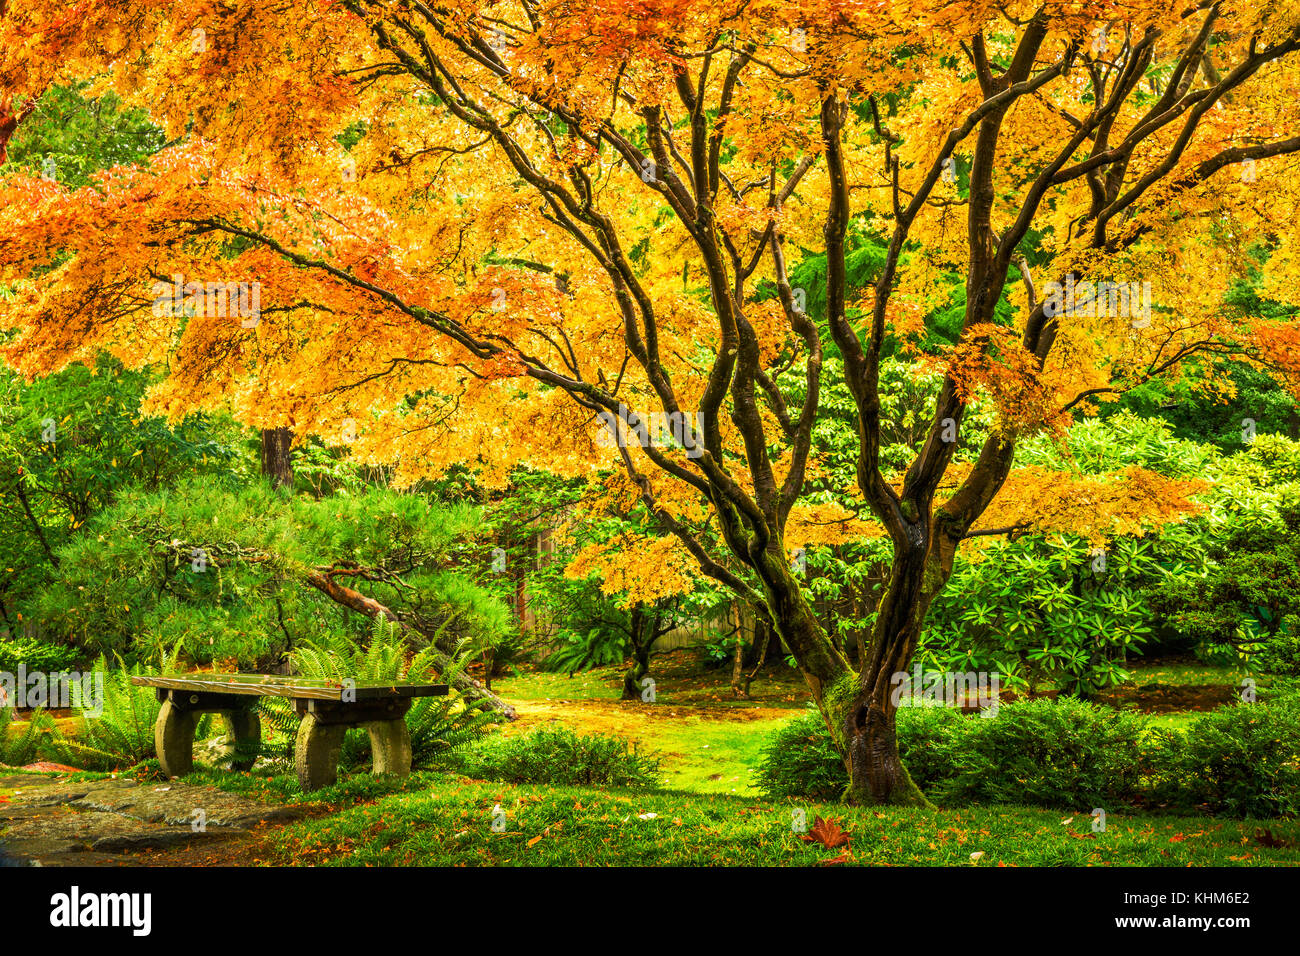 Japanischer Ahorn Baum mit goldenen Herbst Laub neben einem leeren Bank in Seattle Washington Park Arboretum botanischer Garten Stockfoto